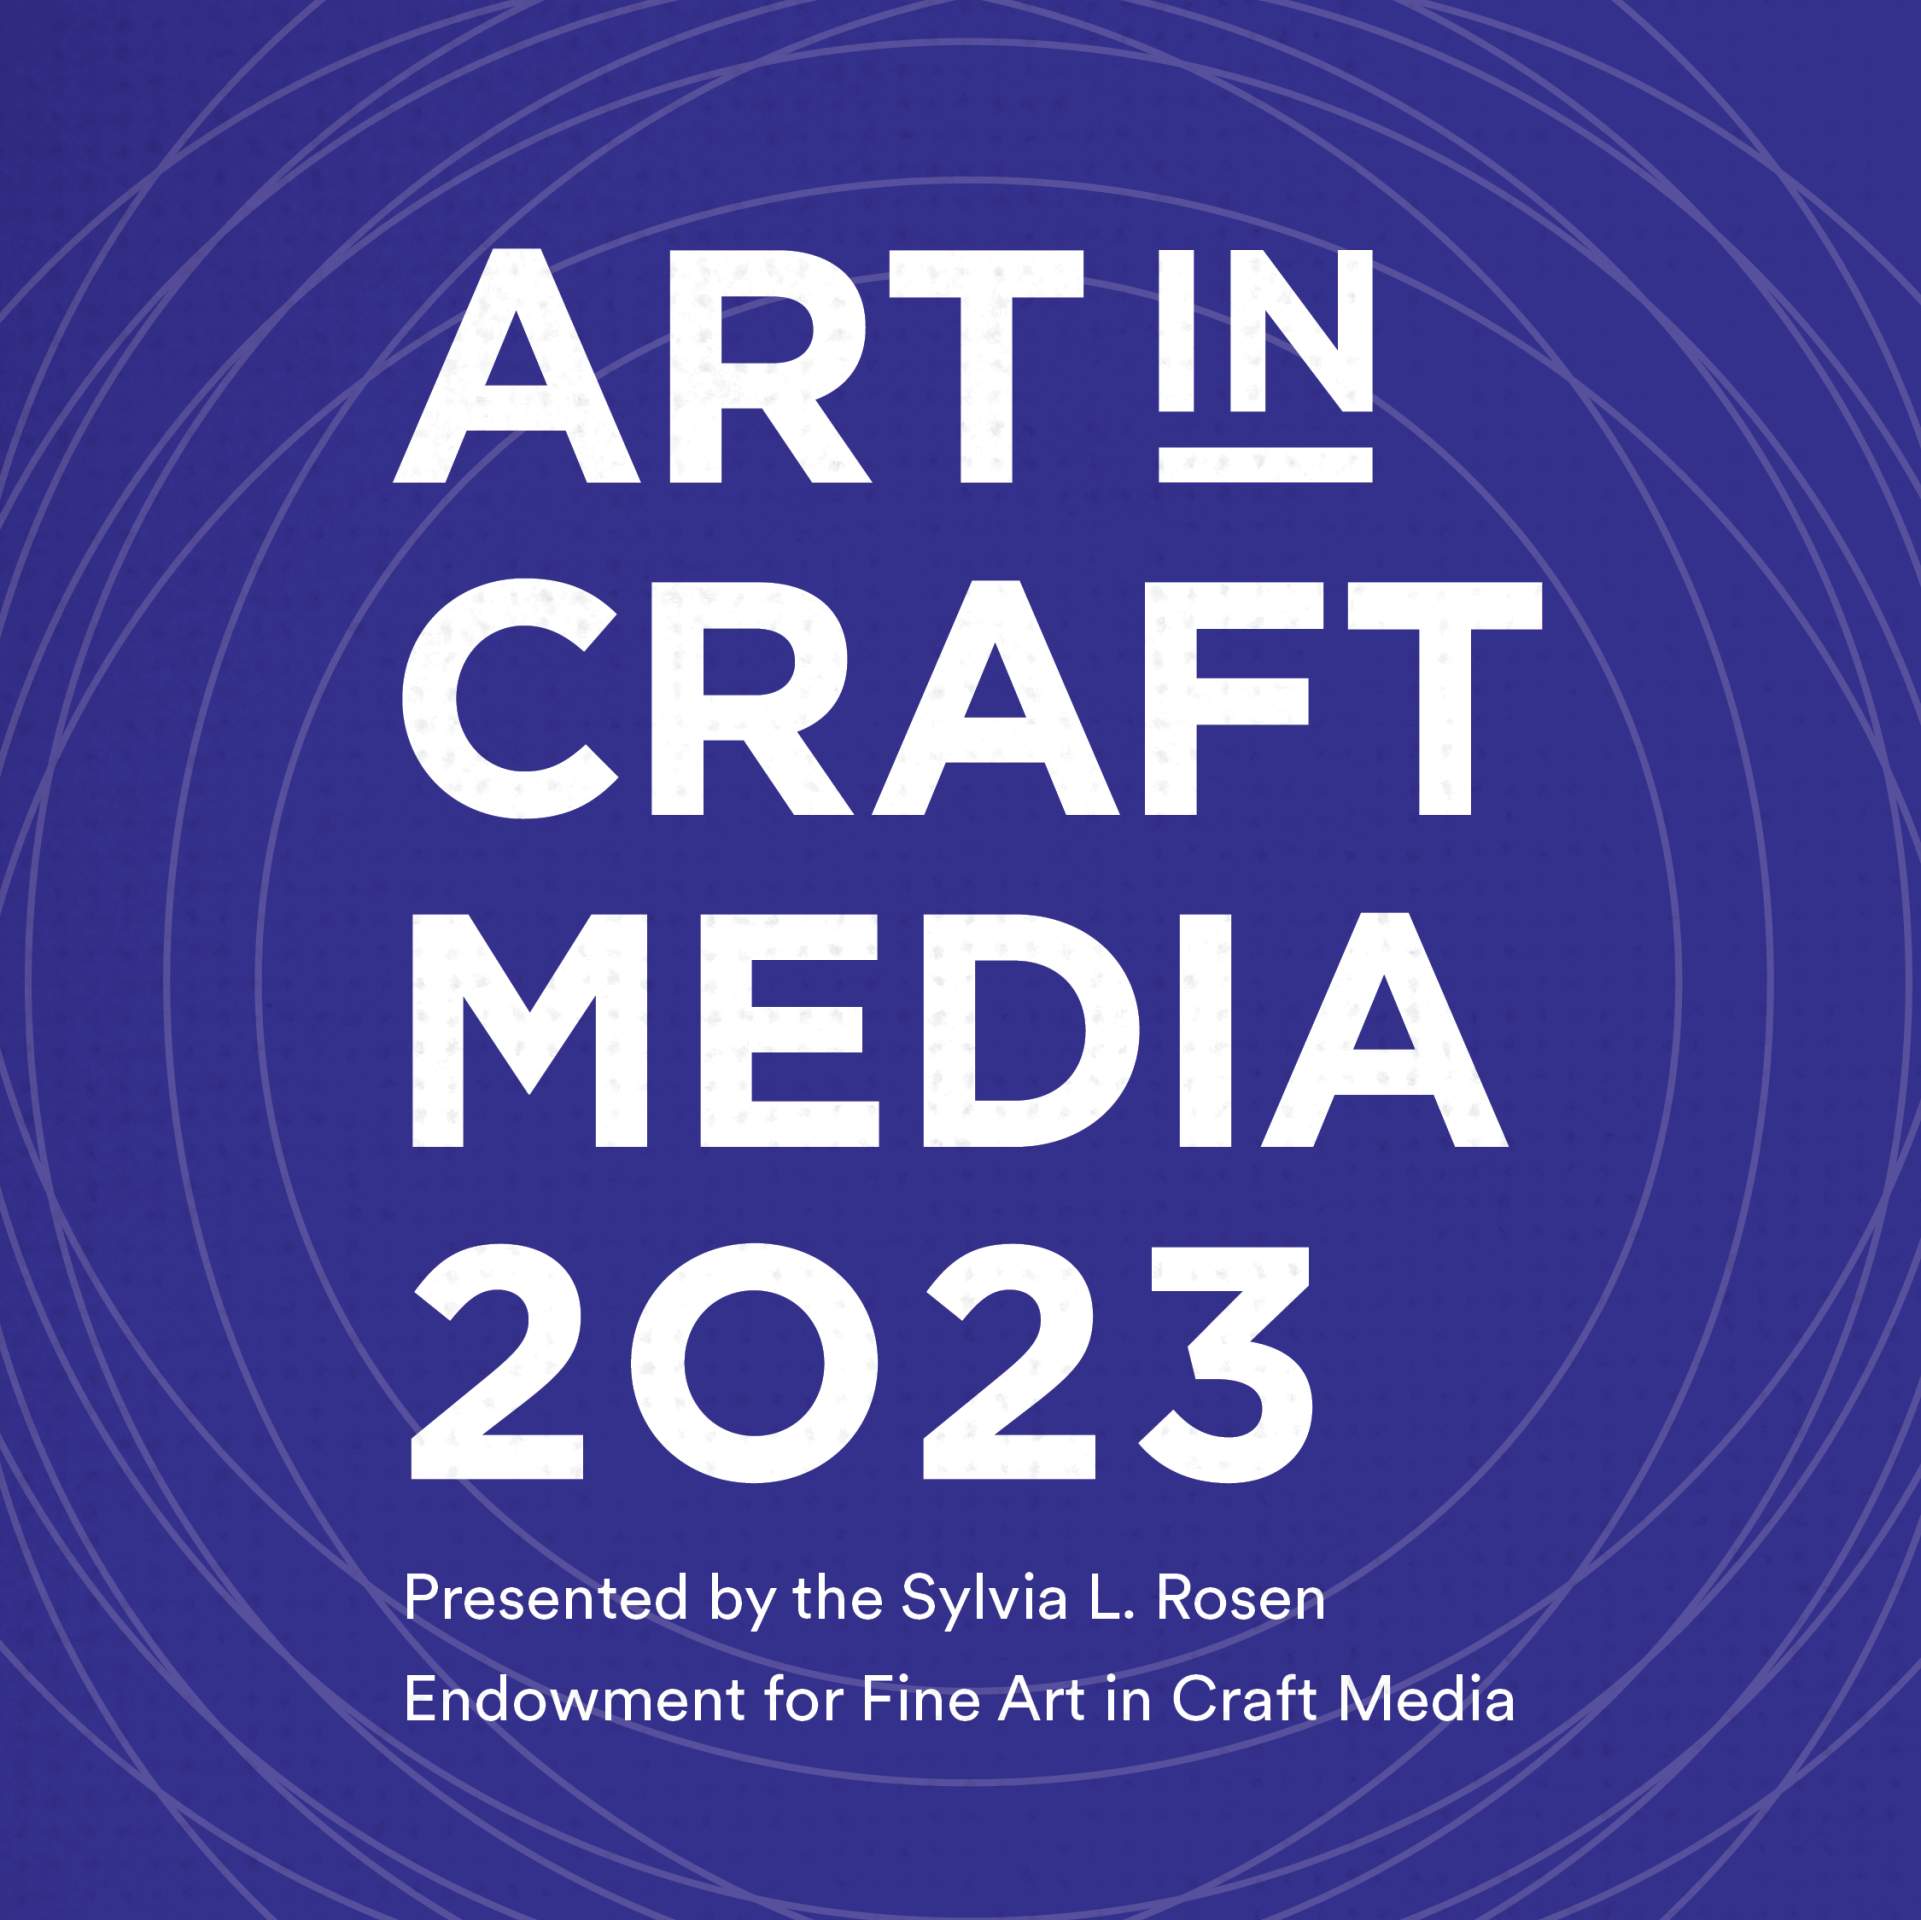 Art in Craft Media 2023 Awards